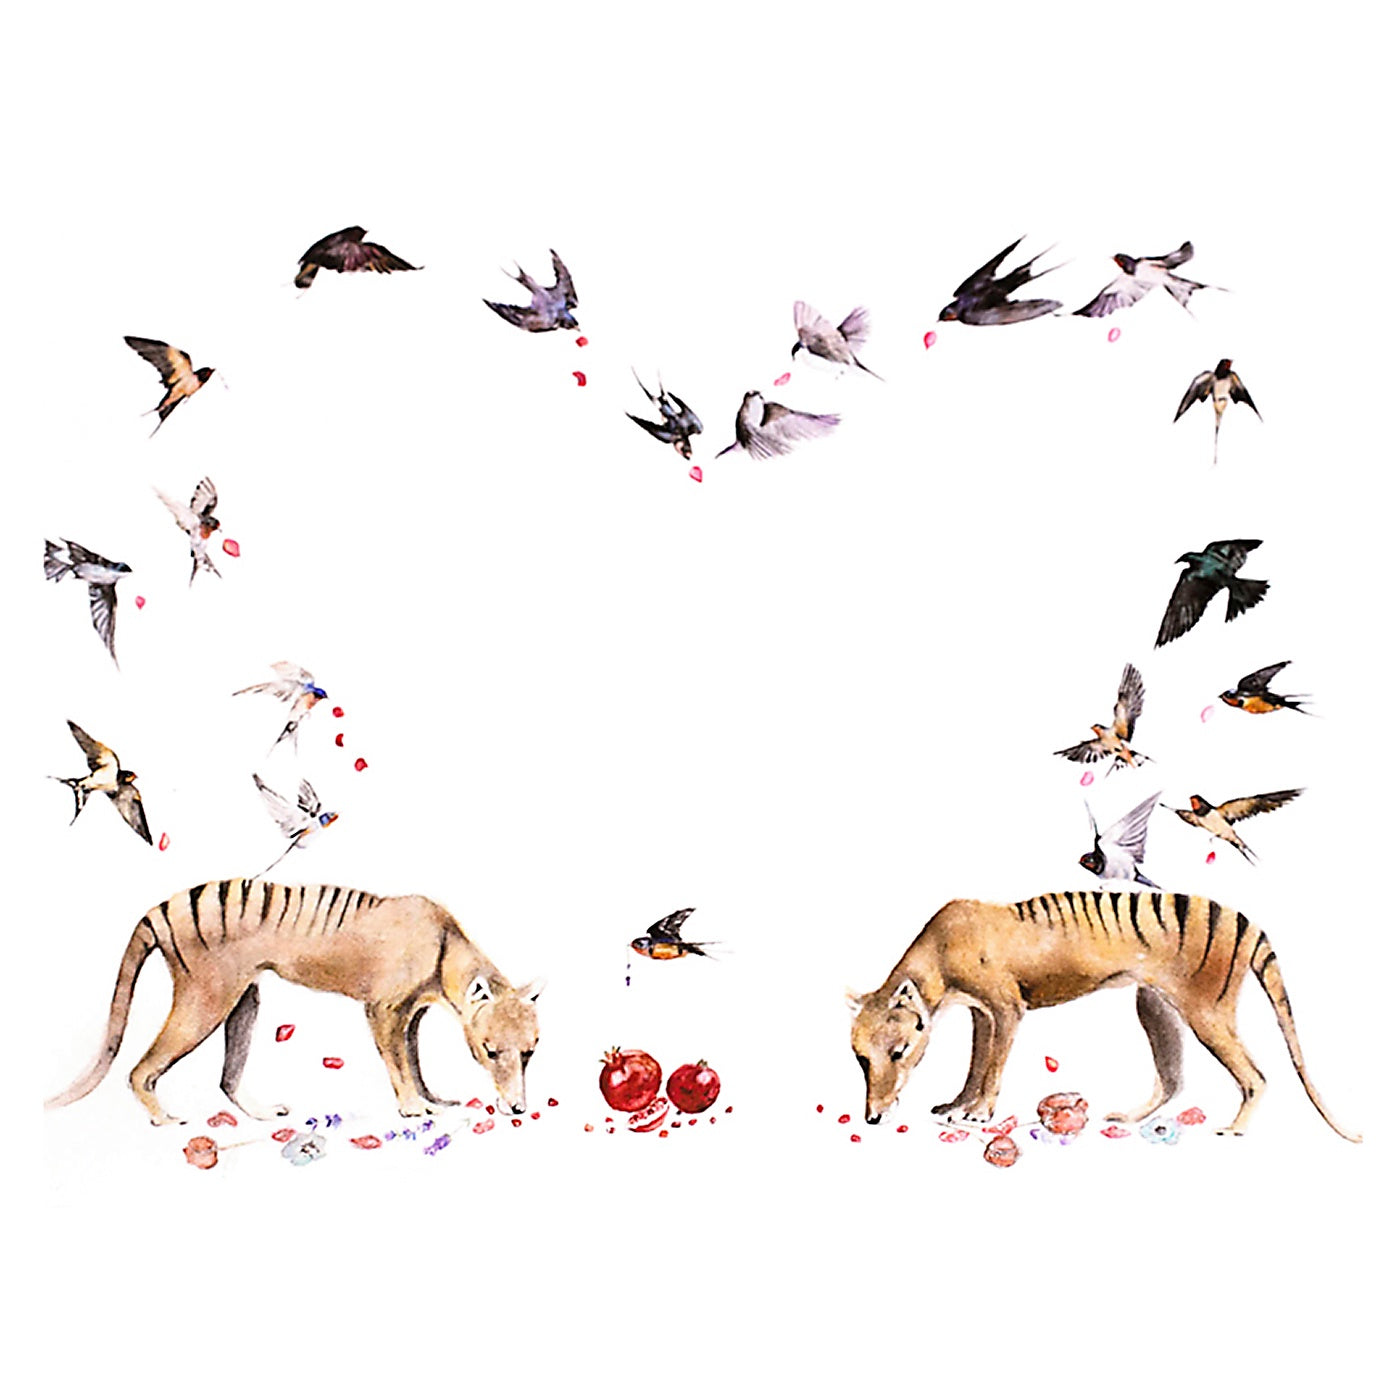 Emma Rose Saffron - Art Print - A4 - Tiger and Swallow Love